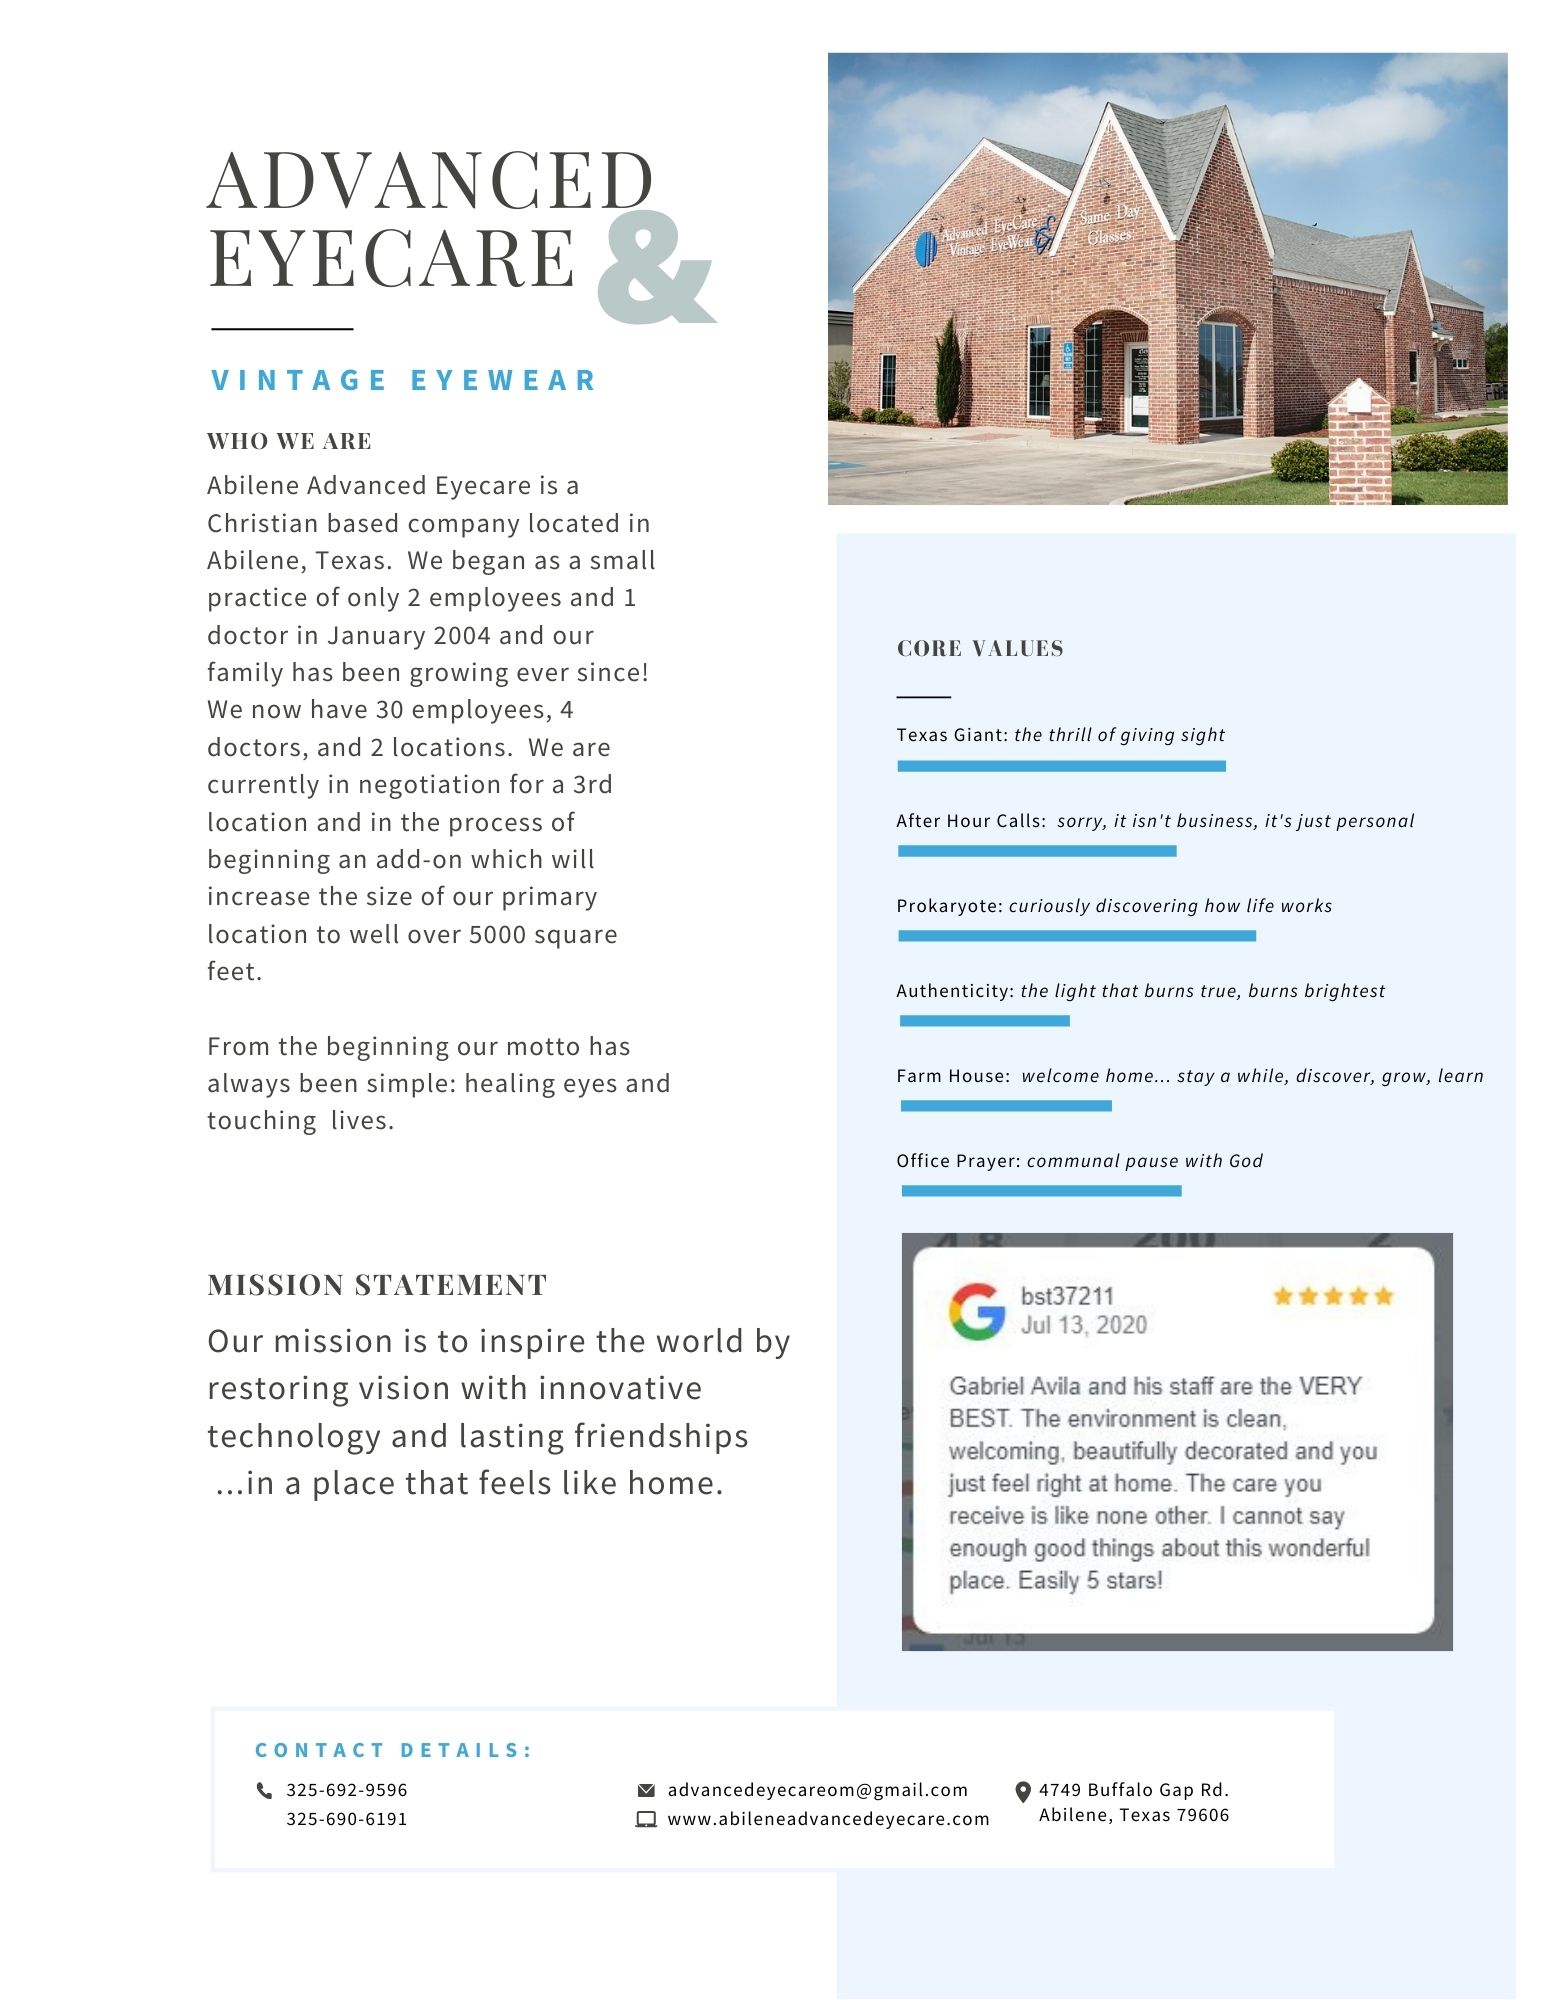 Abilene Advanced Eyecare